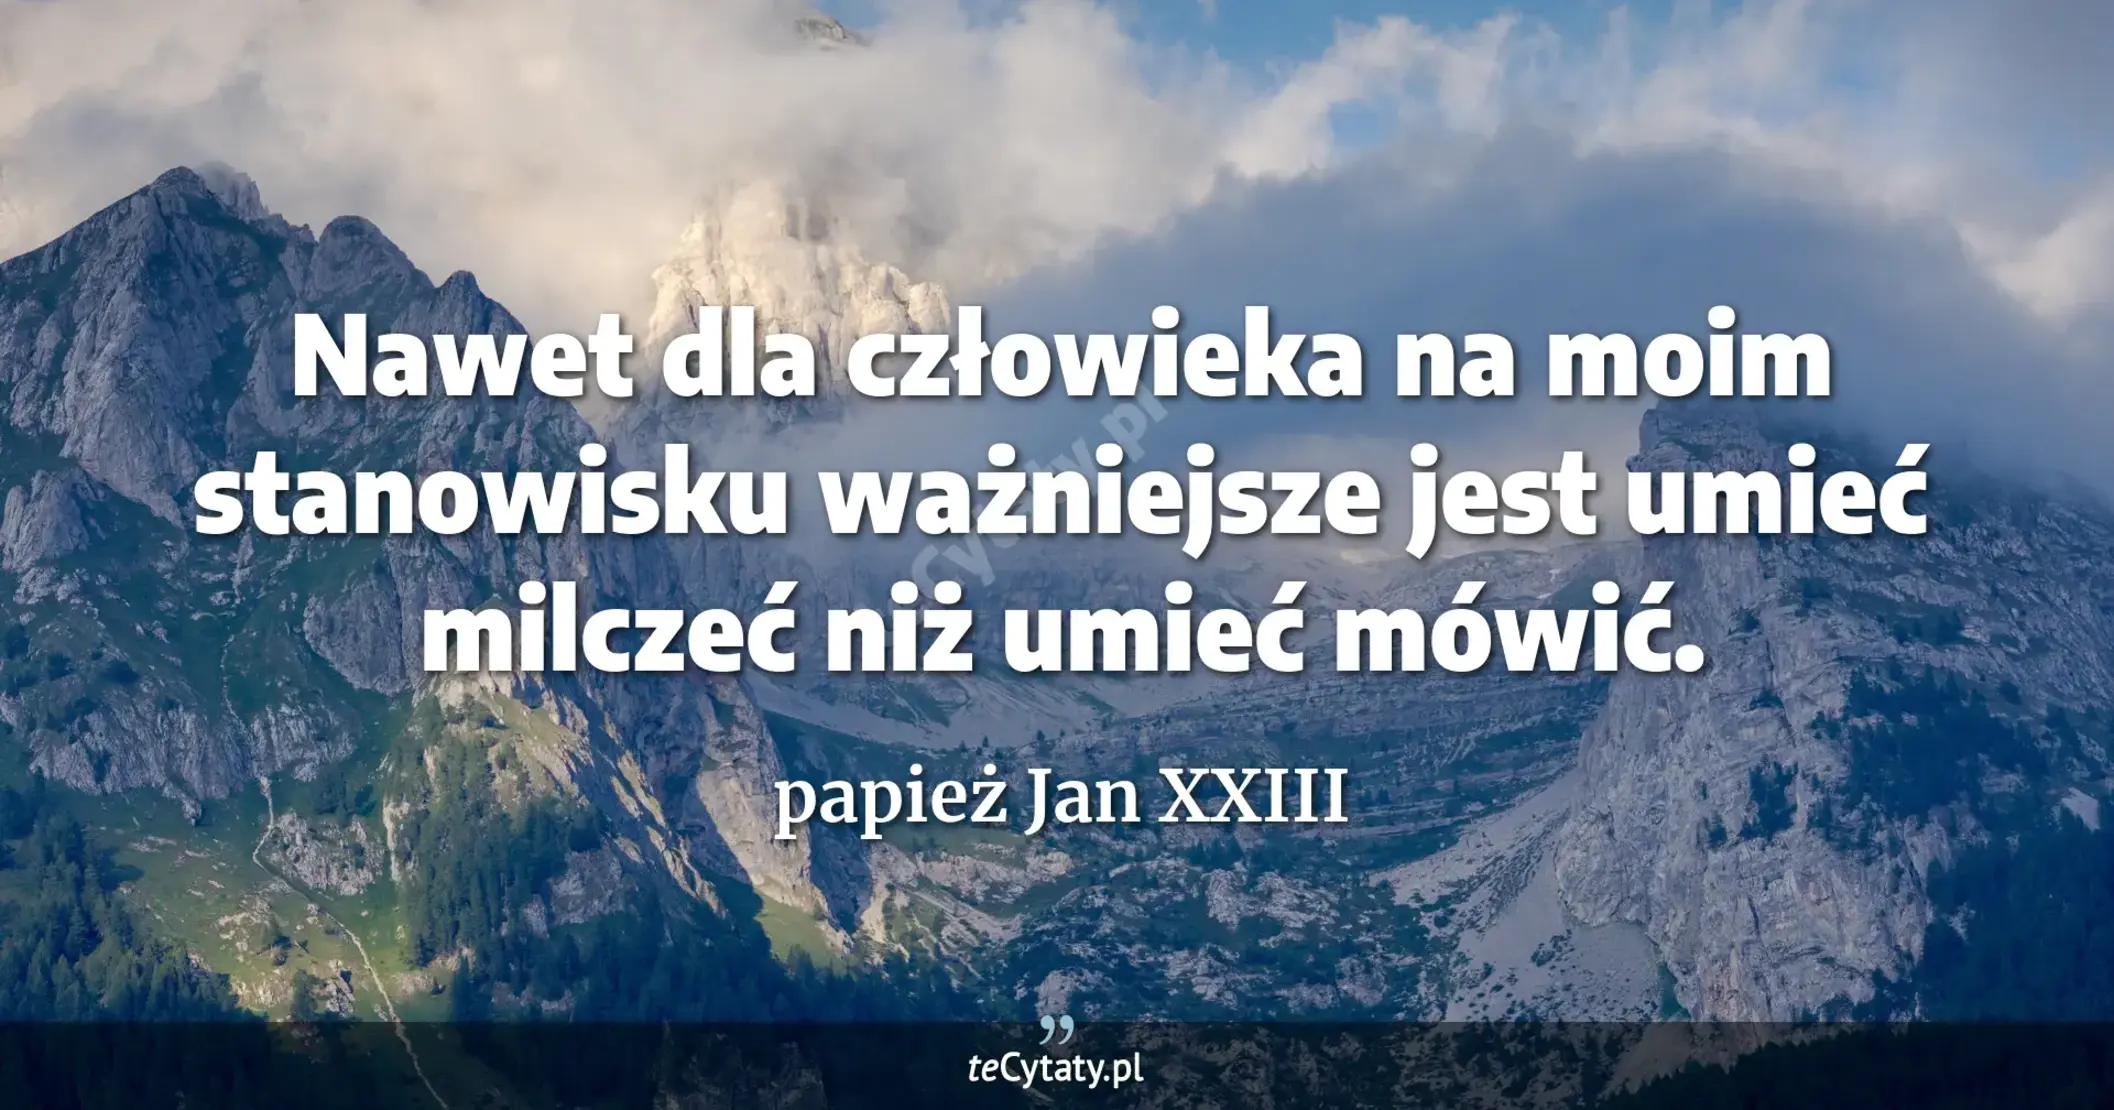 Nawet dla człowieka na moim stanowisku ważniejsze jest umieć milczeć niż umieć mówić. - papież Jan XXIII